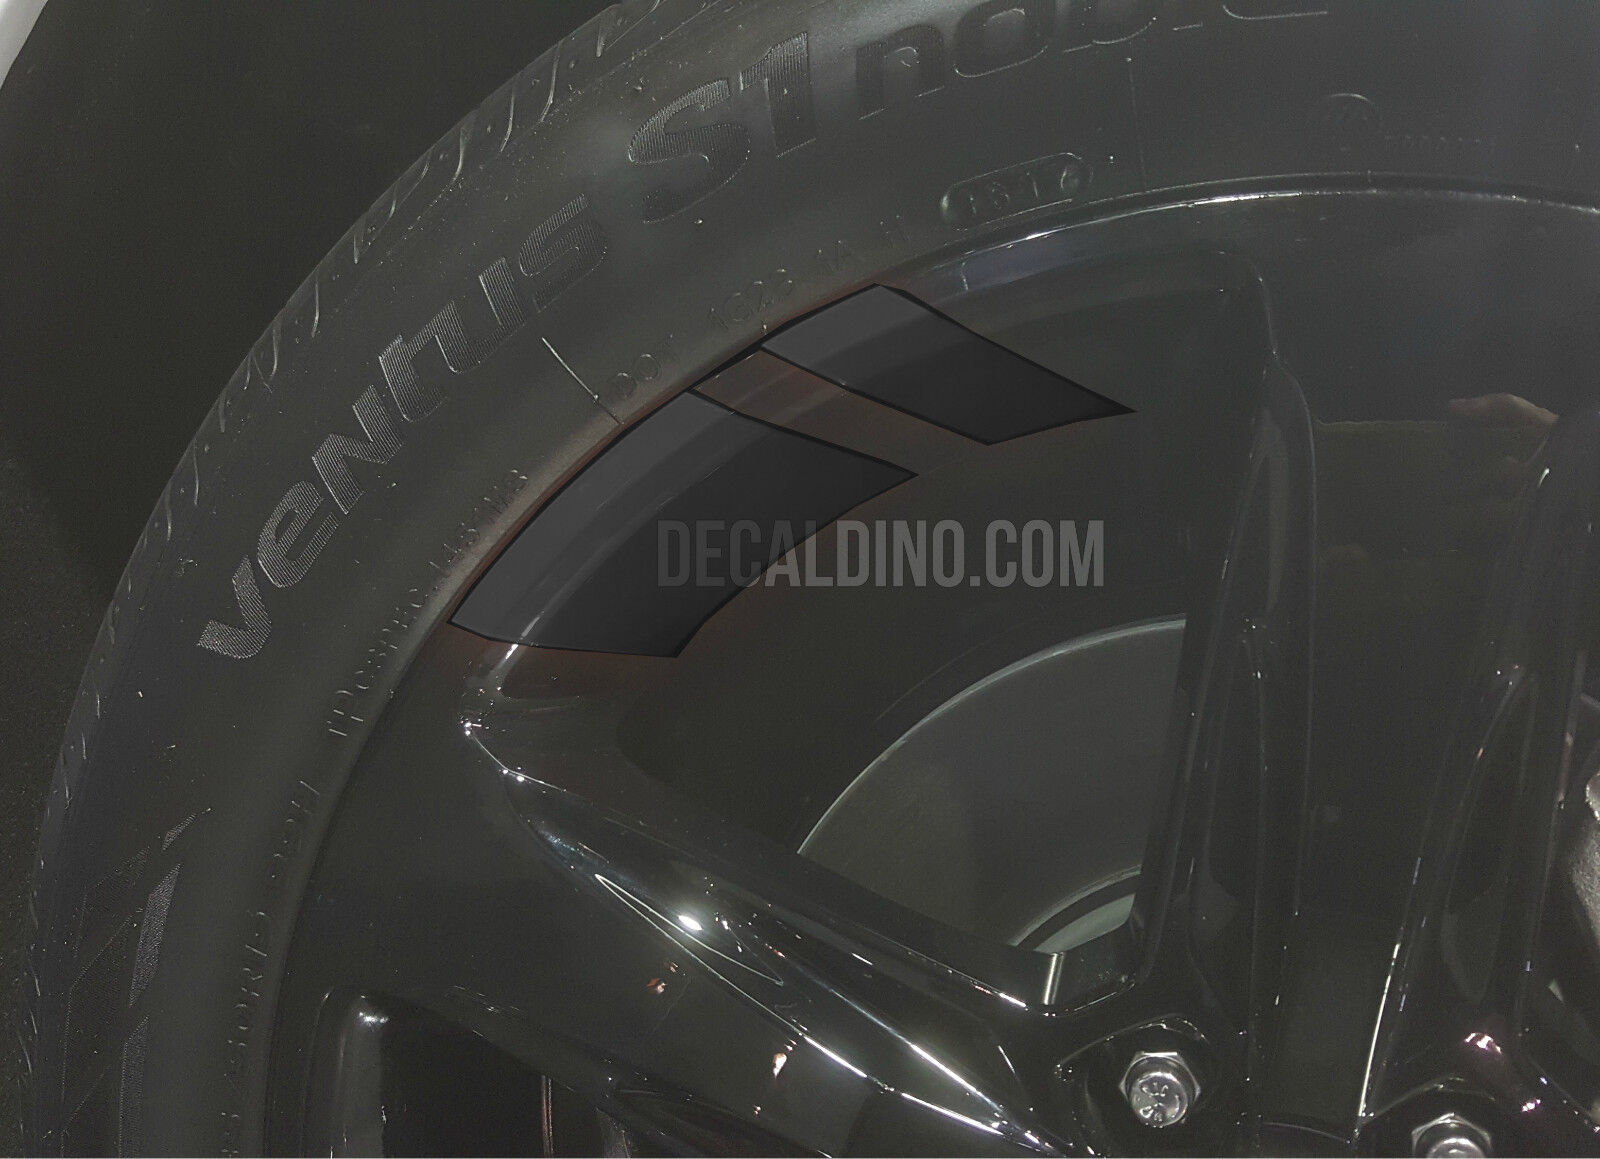 Wheel Stripes Hash Marks - Fits Camaro Chevy Redline Rim Stickers Cruze Decals